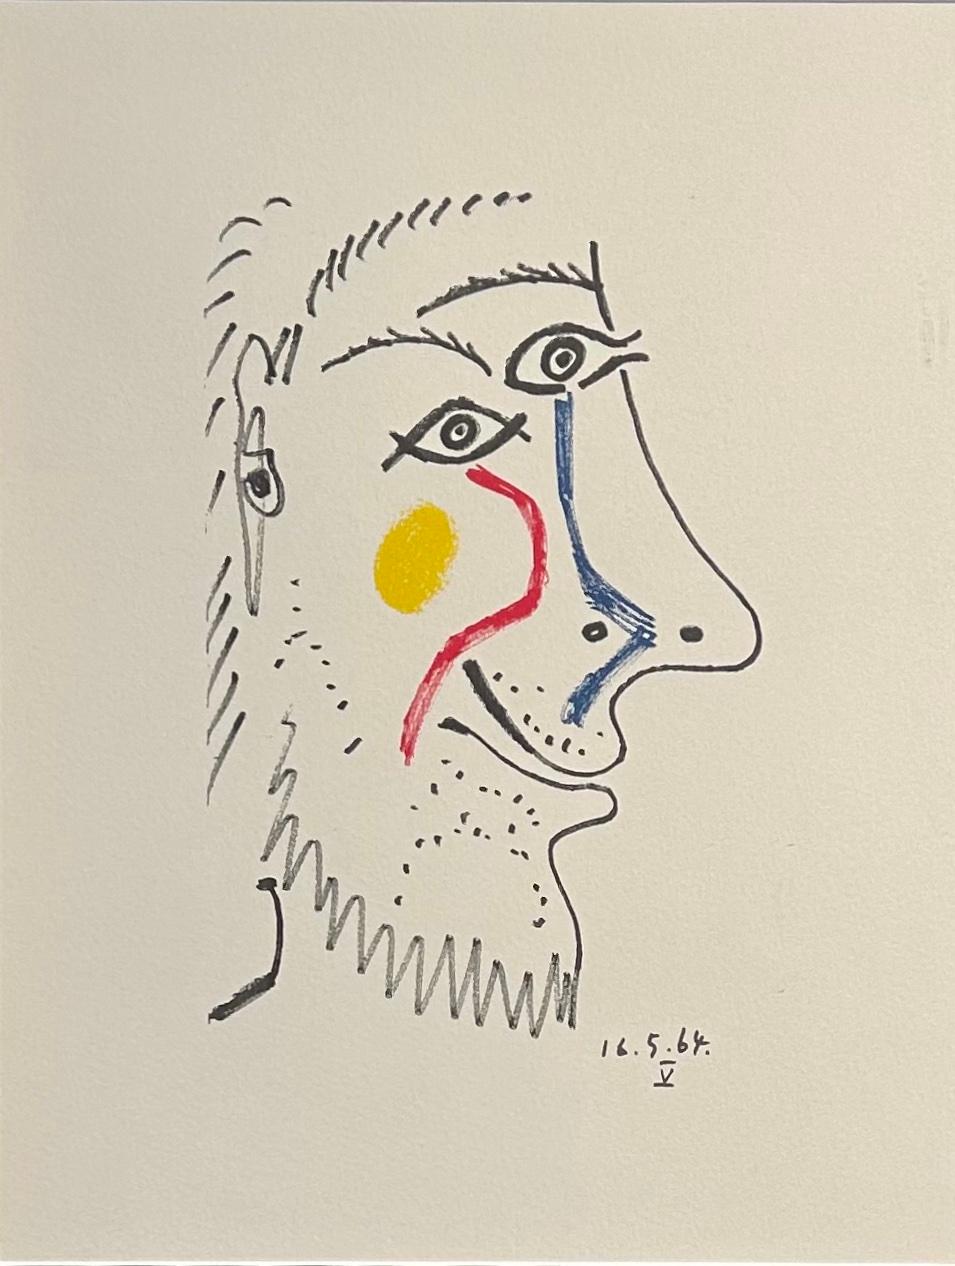 Colour Lithograph on Arches Paper '16.5.64.V' from 'Le Goût de Bonheur'  - Print by Pablo Picasso